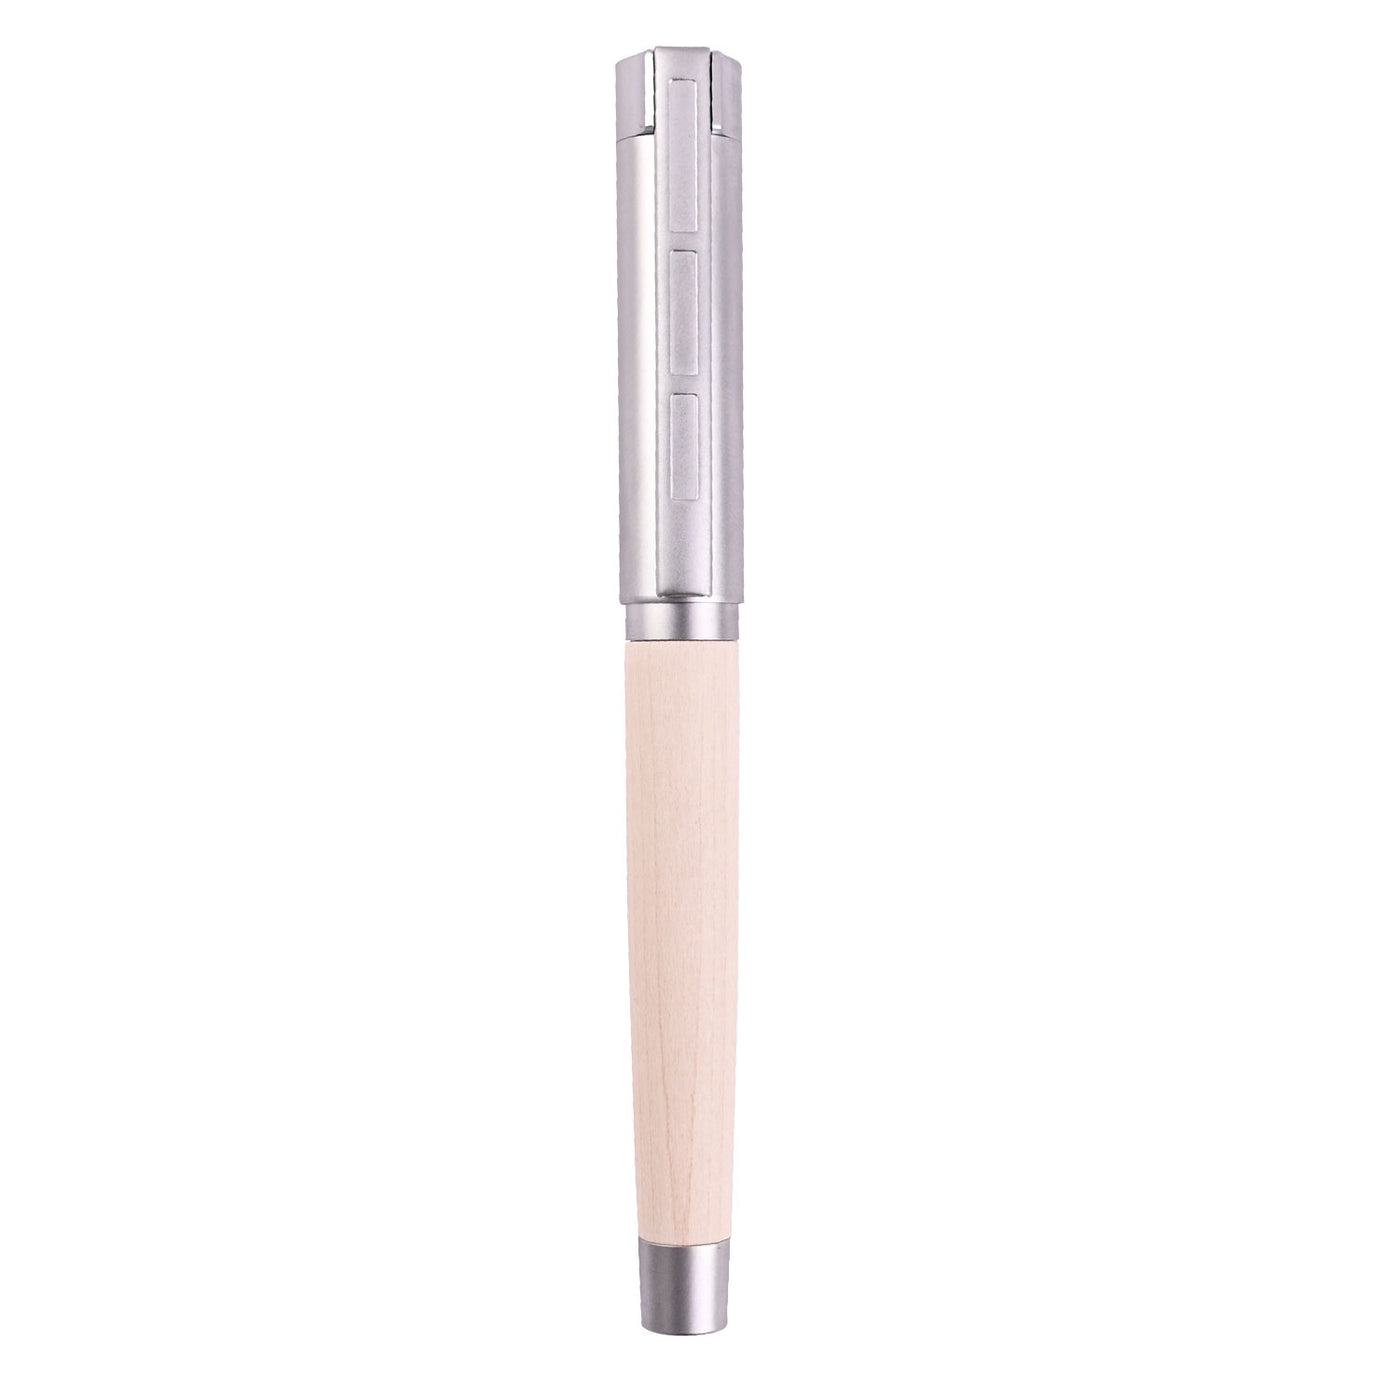 Staedtler Premium Lignum Fountain Pen - Maple Wood CT 6